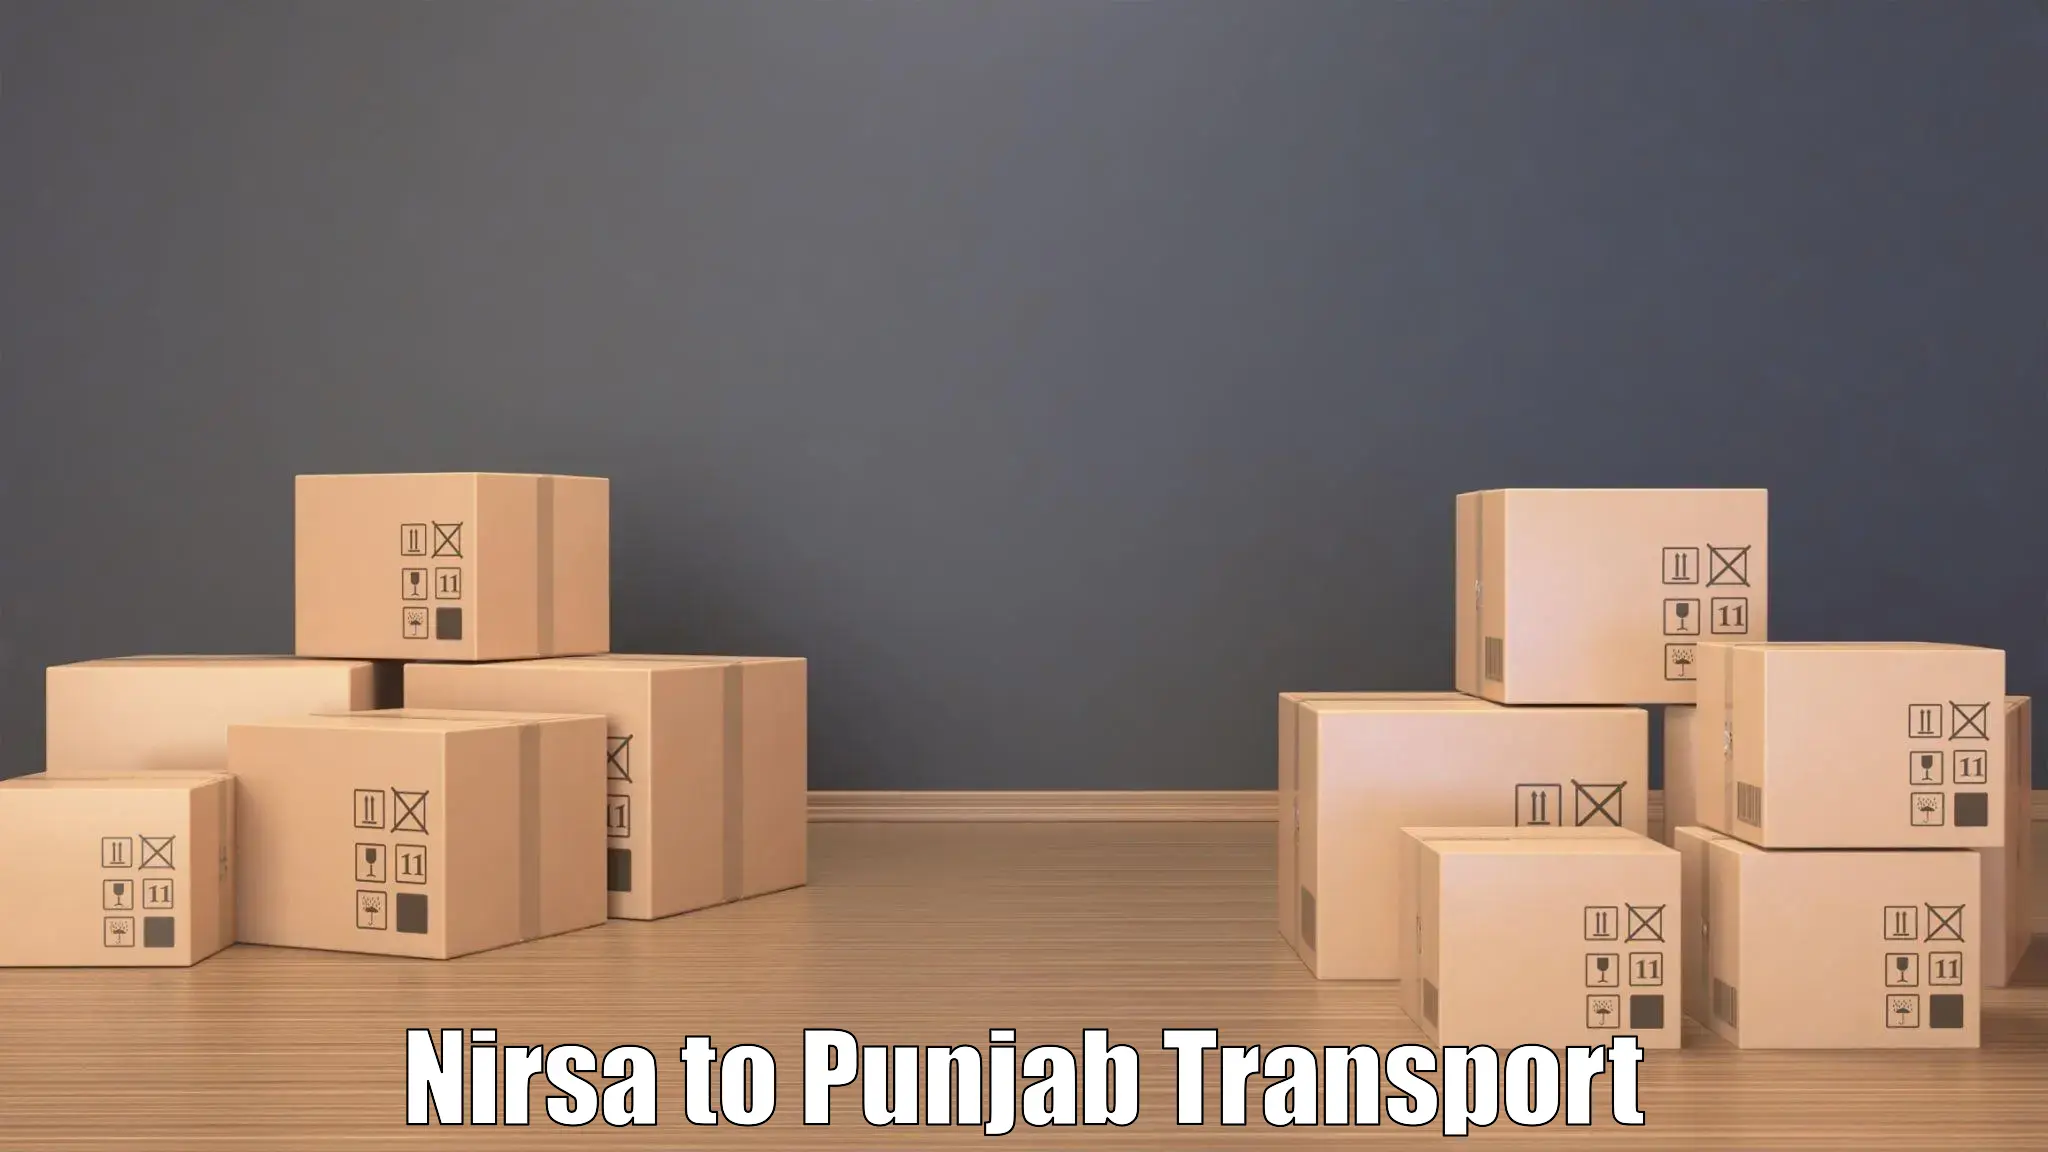 Transport shared services Nirsa to Punjab